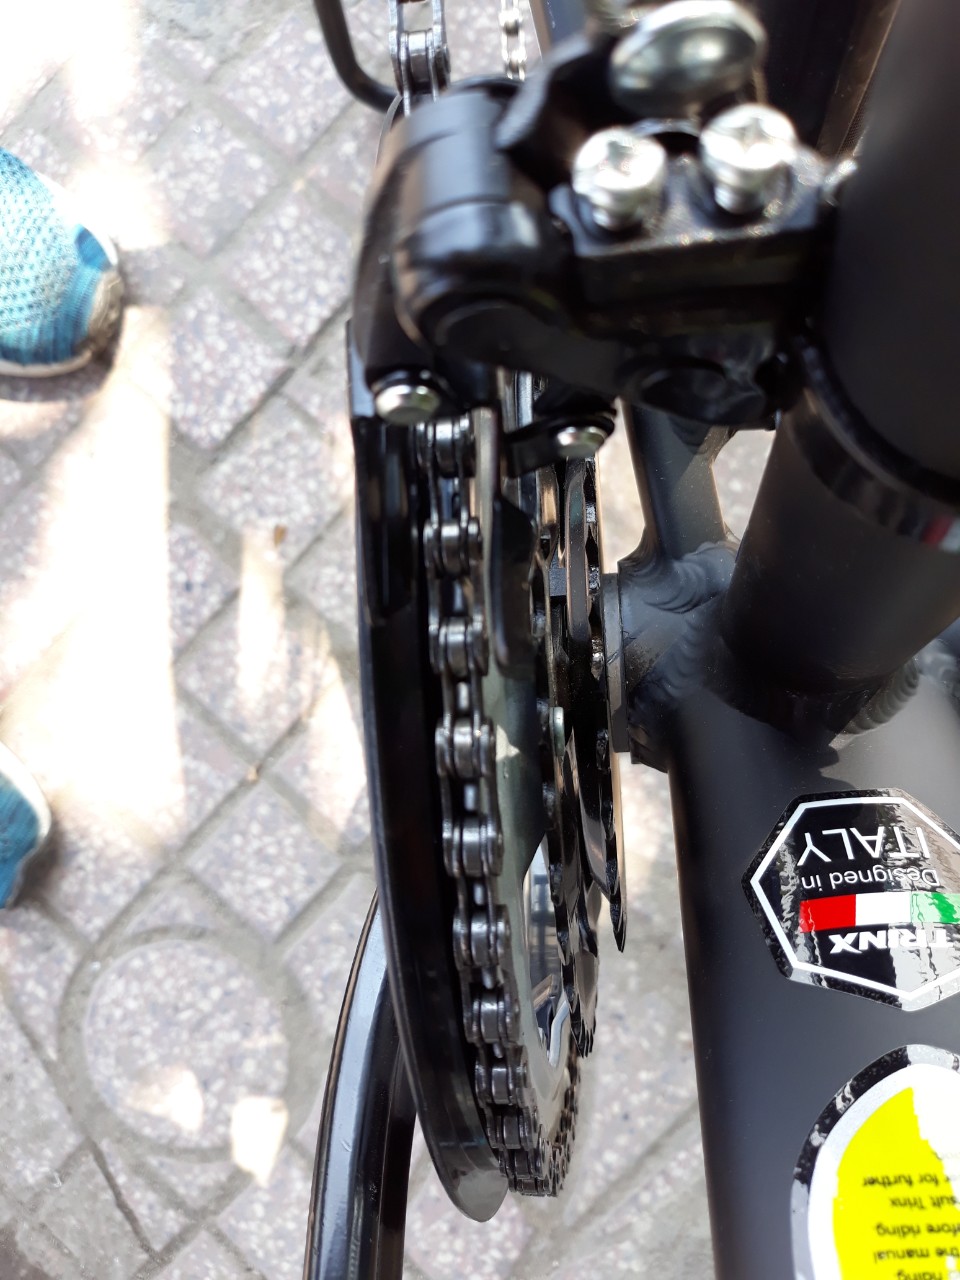 Xe đạp đua TRINX TEMPO1.0 2019 đen xanh lá trắng